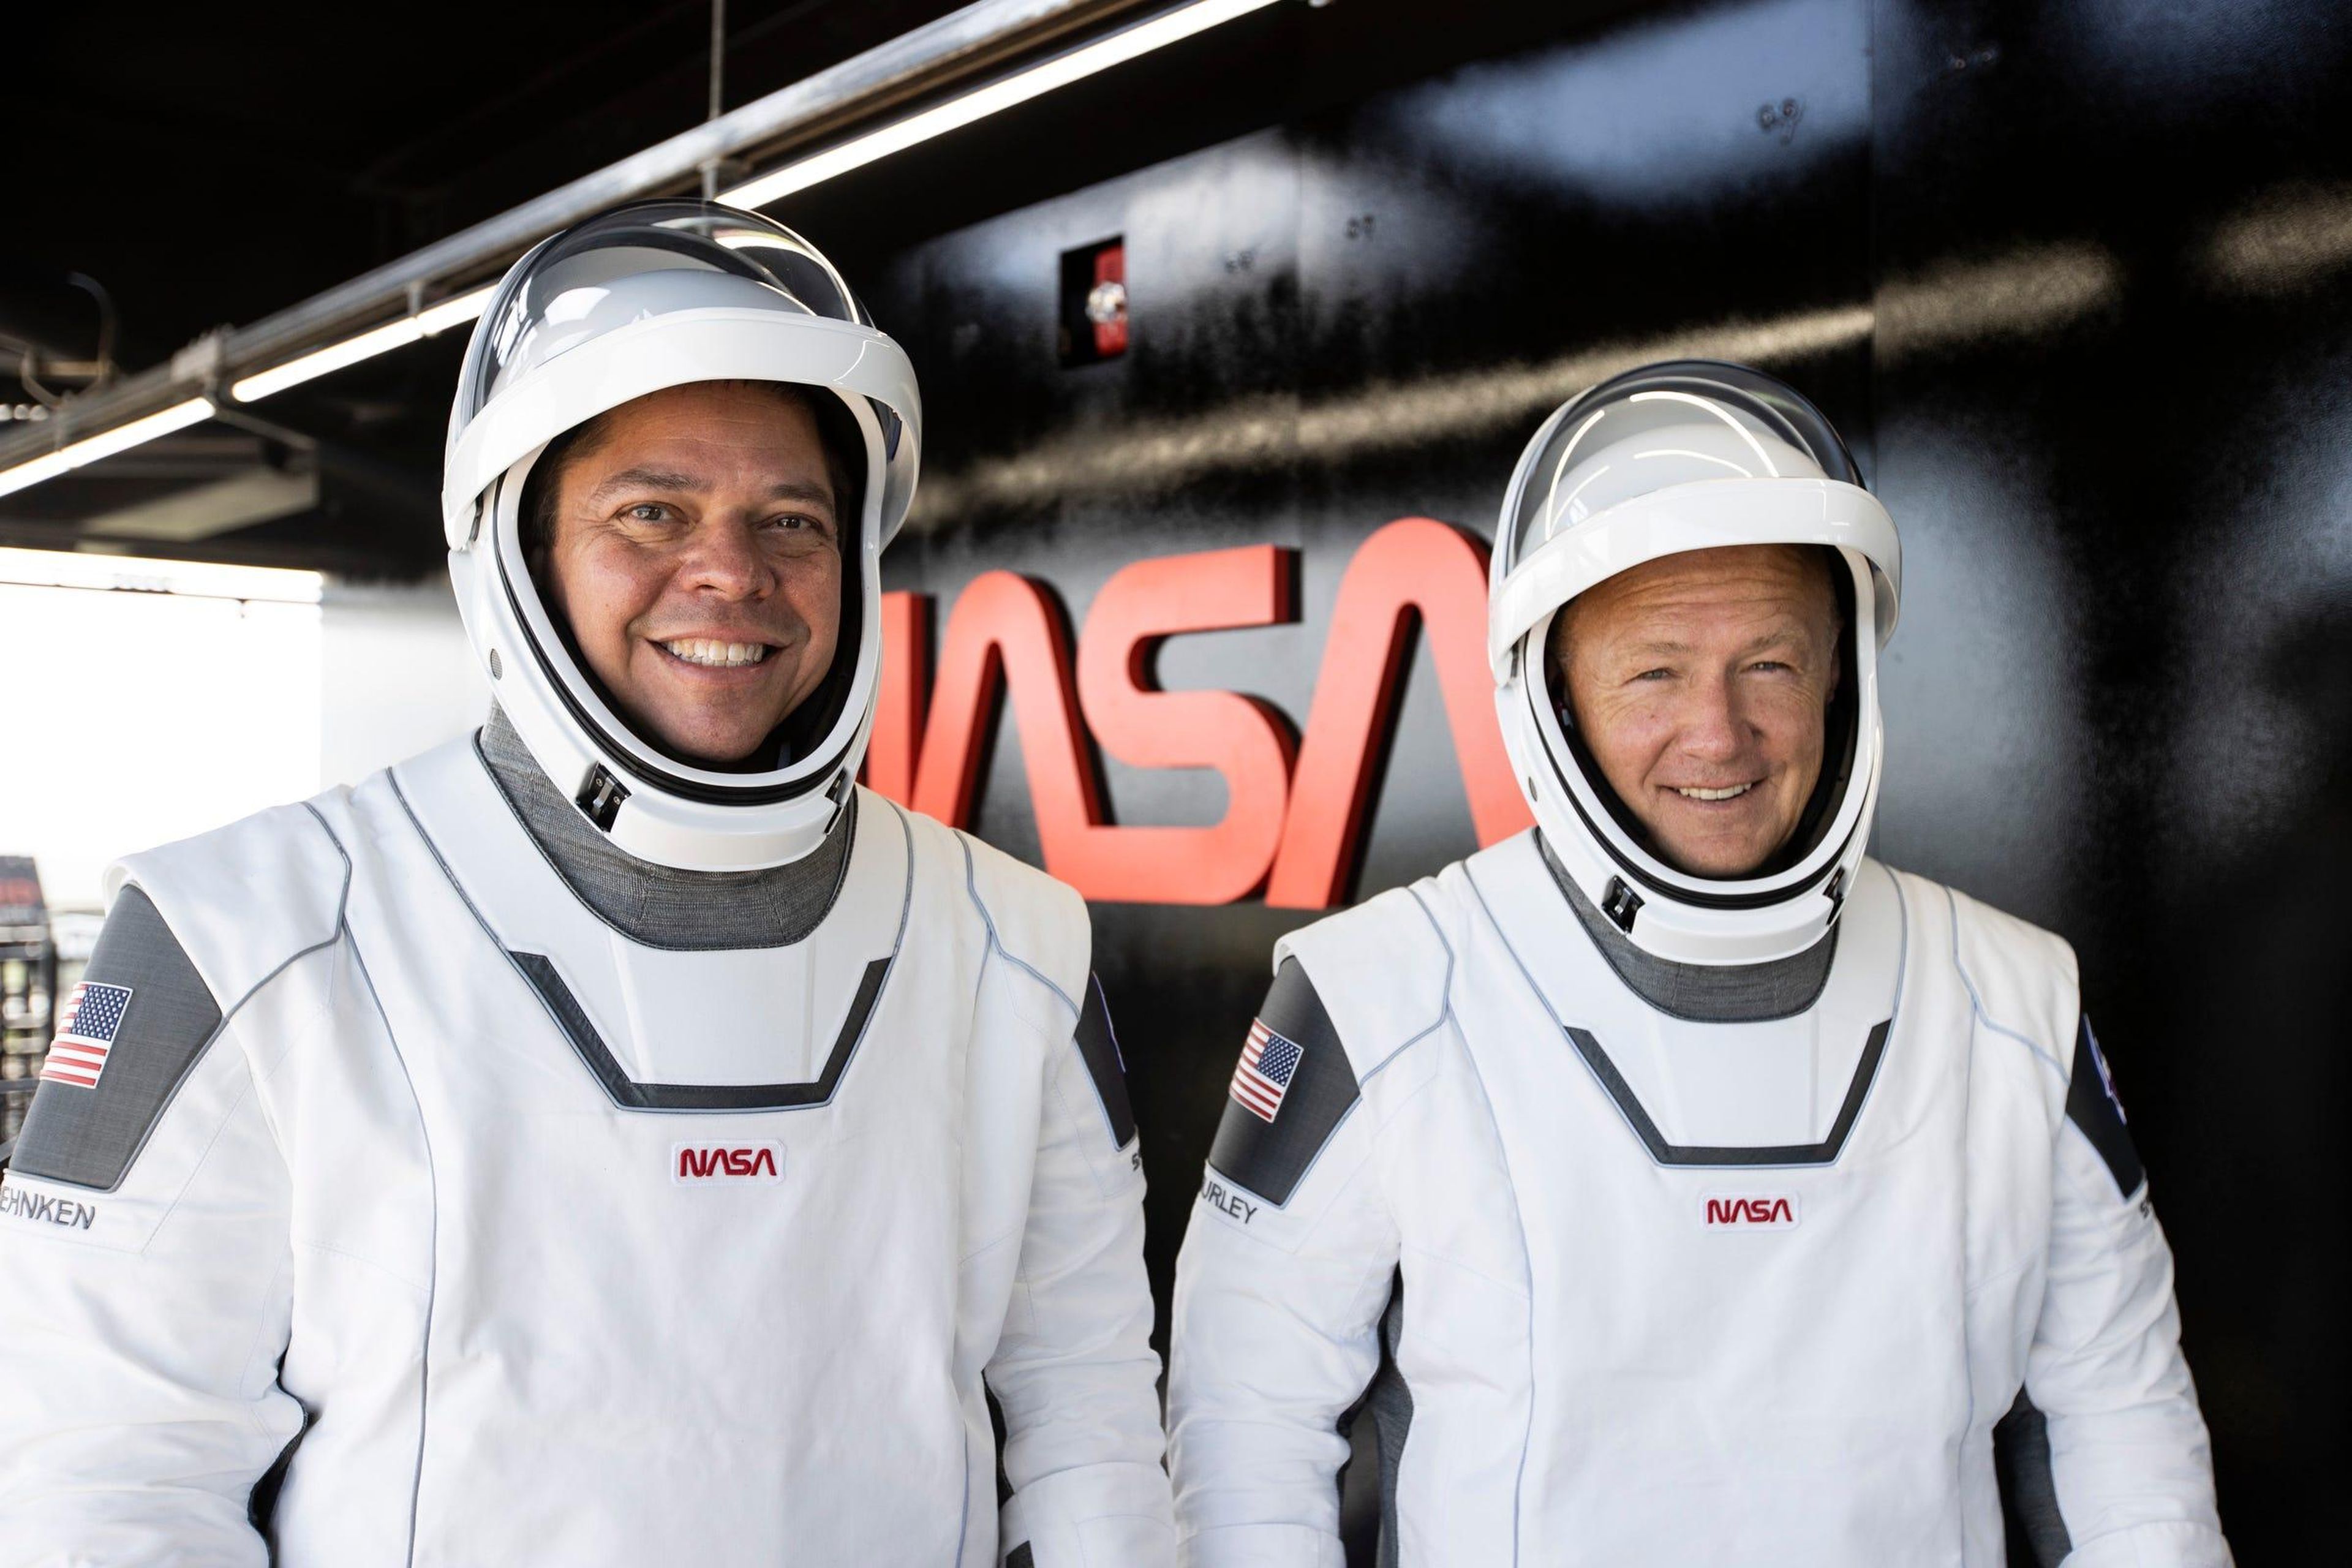 Bob Behnken y Doug Hurley llevando sus trajes de astronauta para una prueba de la misión Demo-2, mayo 2020.